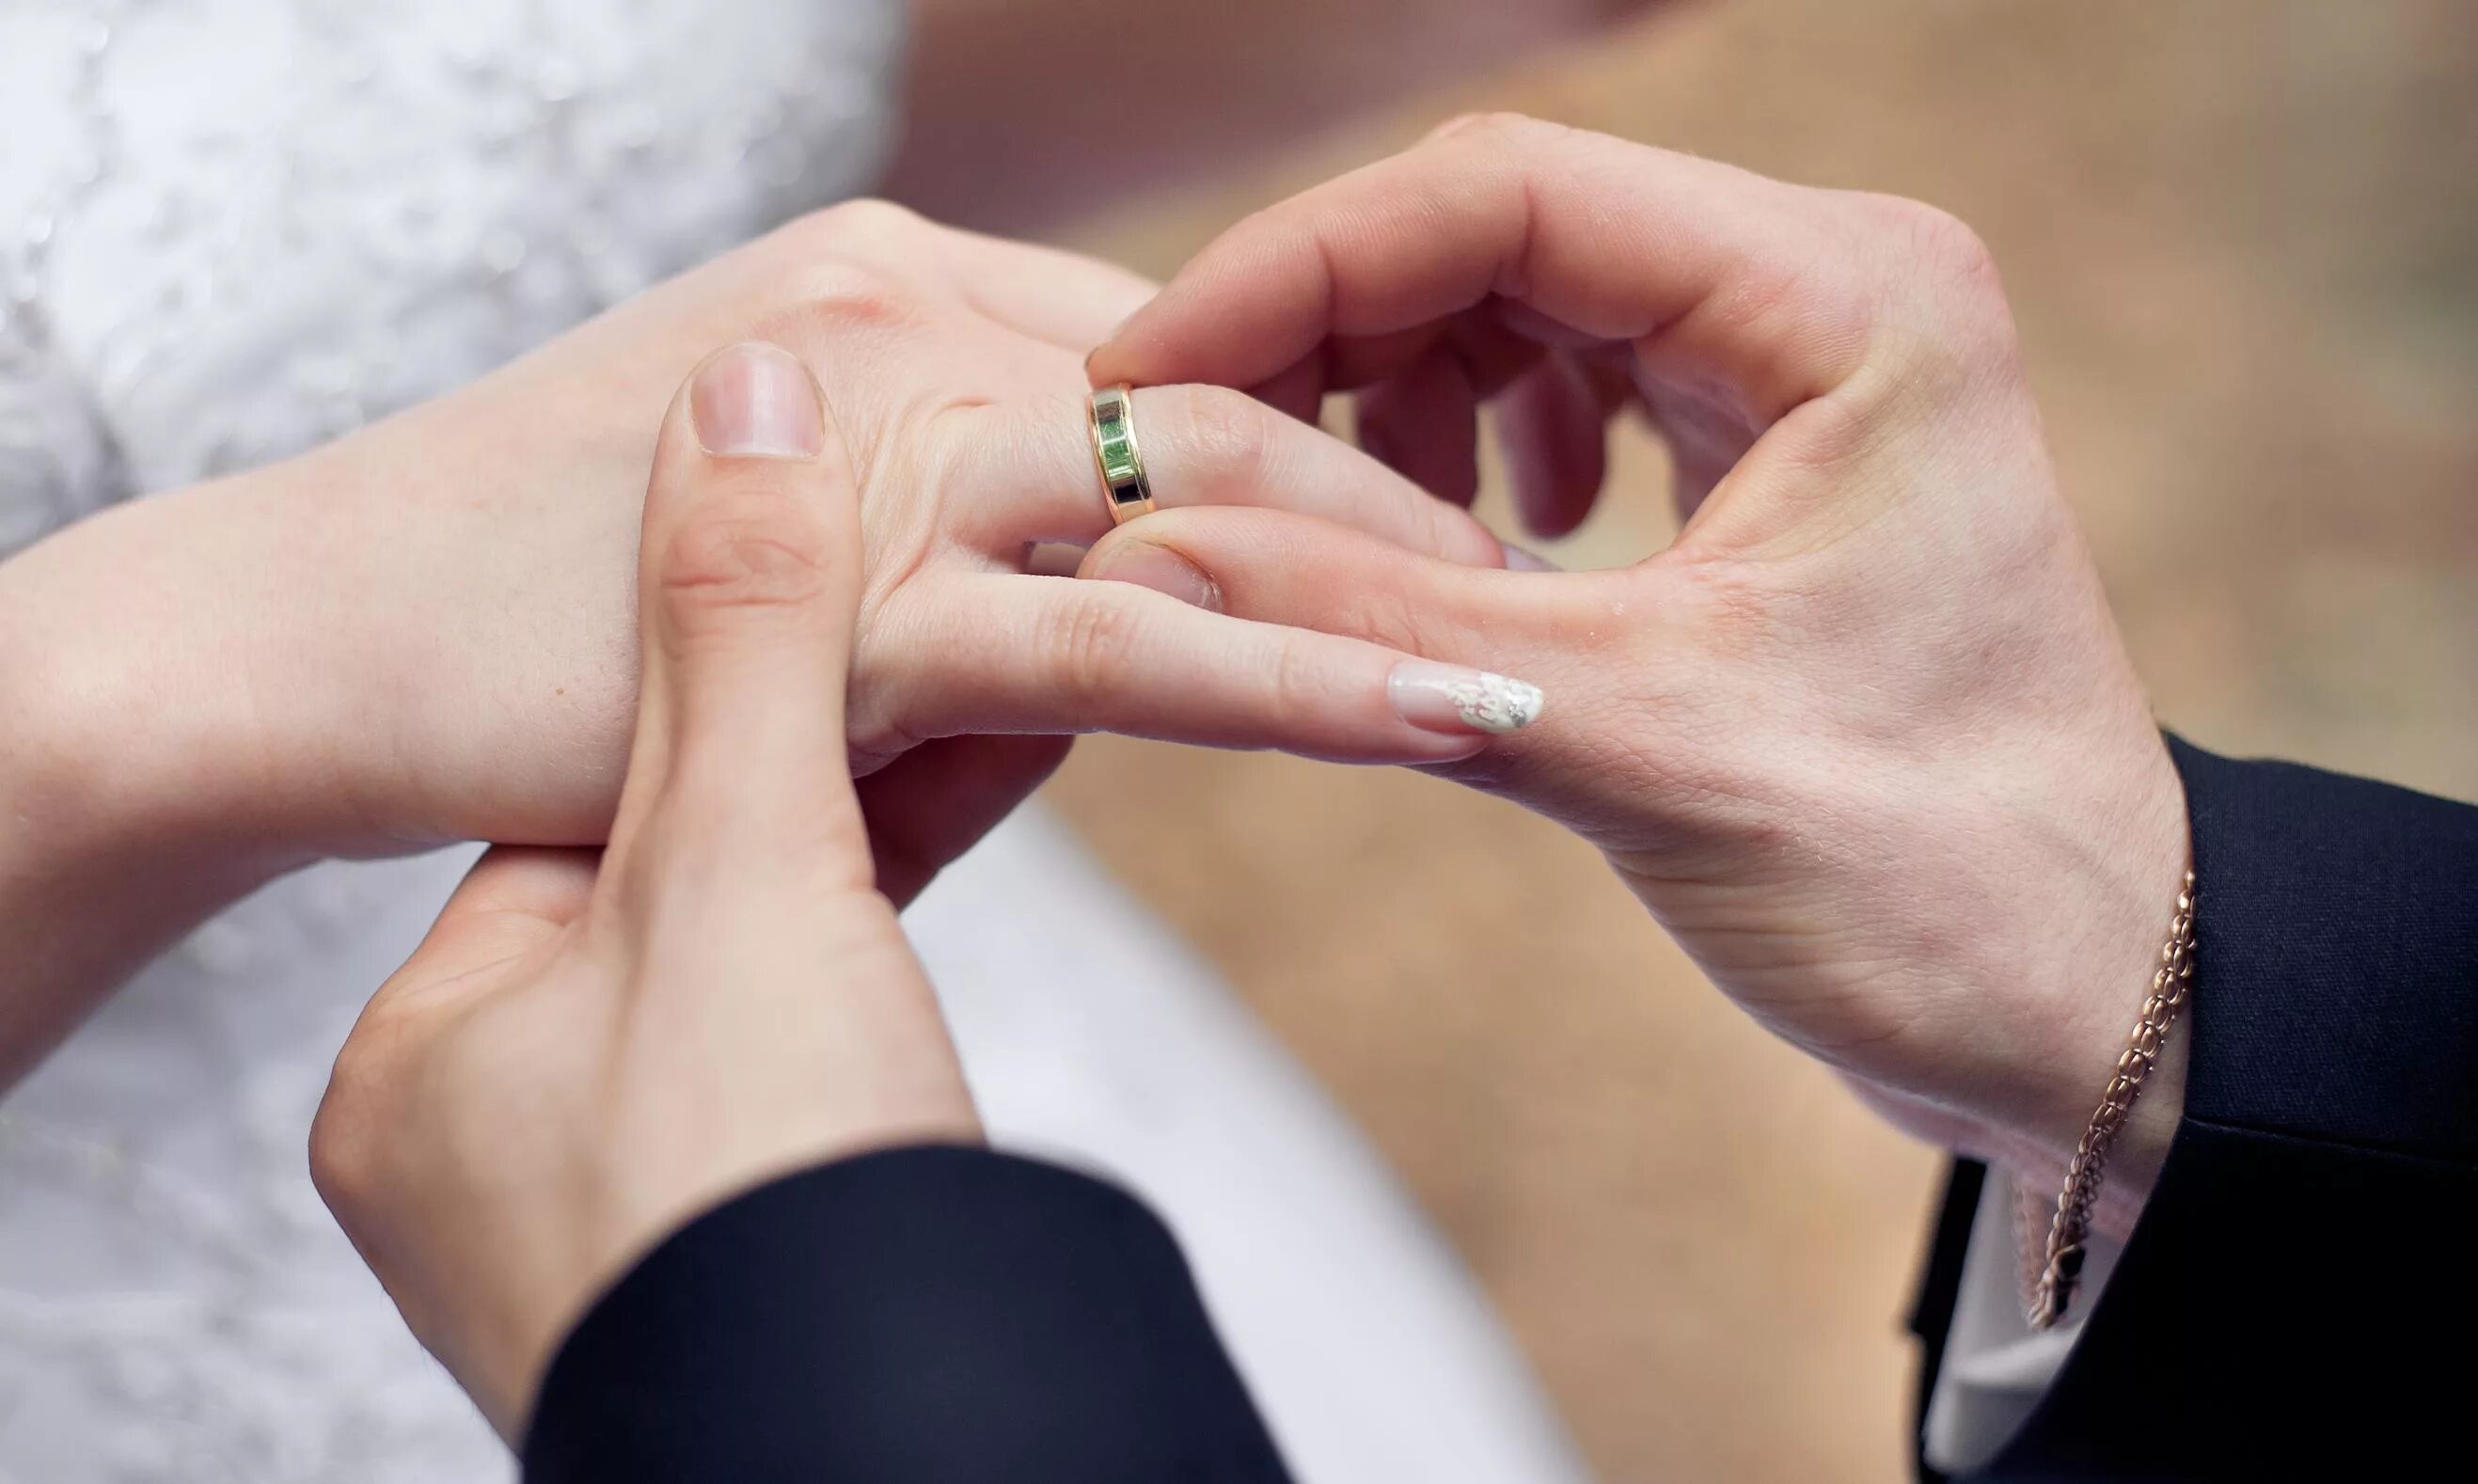 "Обручальное кольцо" Глаголева. Обручальное кольцо на пальце. Надевает кольцо на палец. Кольцо на палец свадьба.